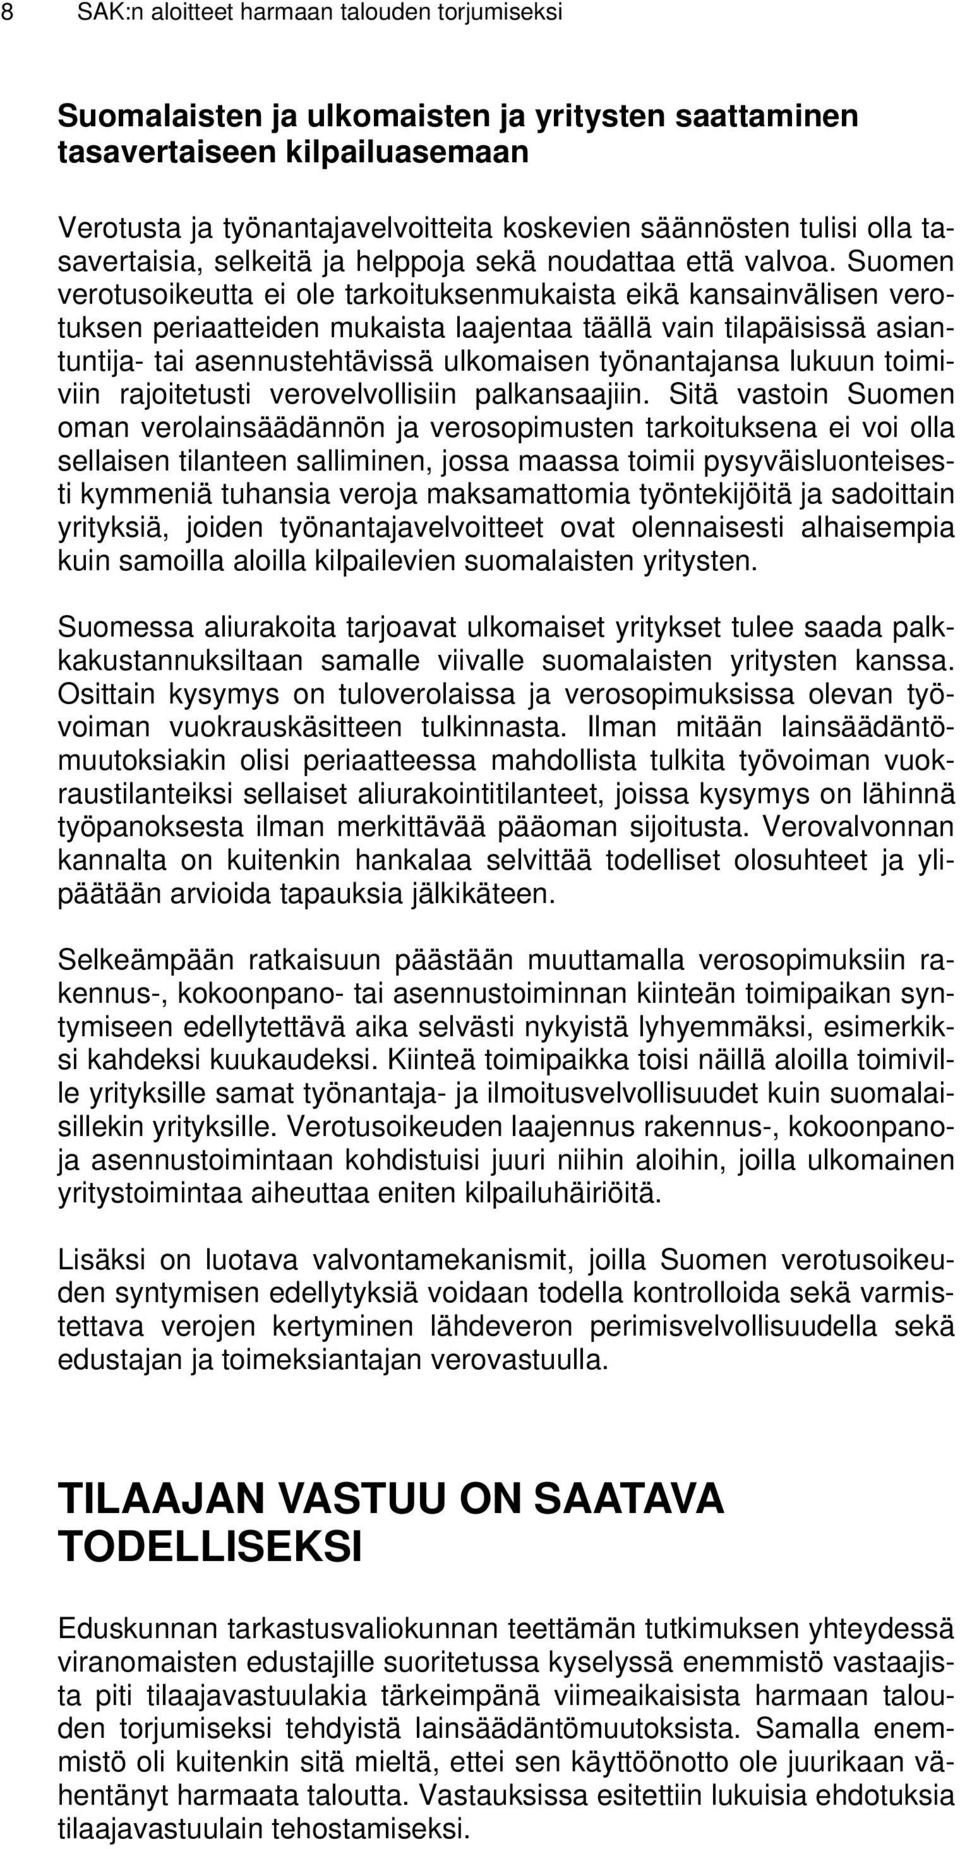 Suomen verotusoikeutta ei ole tarkoituksenmukaista eikä kansainvälisen verotuksen periaatteiden mukaista laajentaa täällä vain tilapäisissä asiantuntija- tai asennustehtävissä ulkomaisen